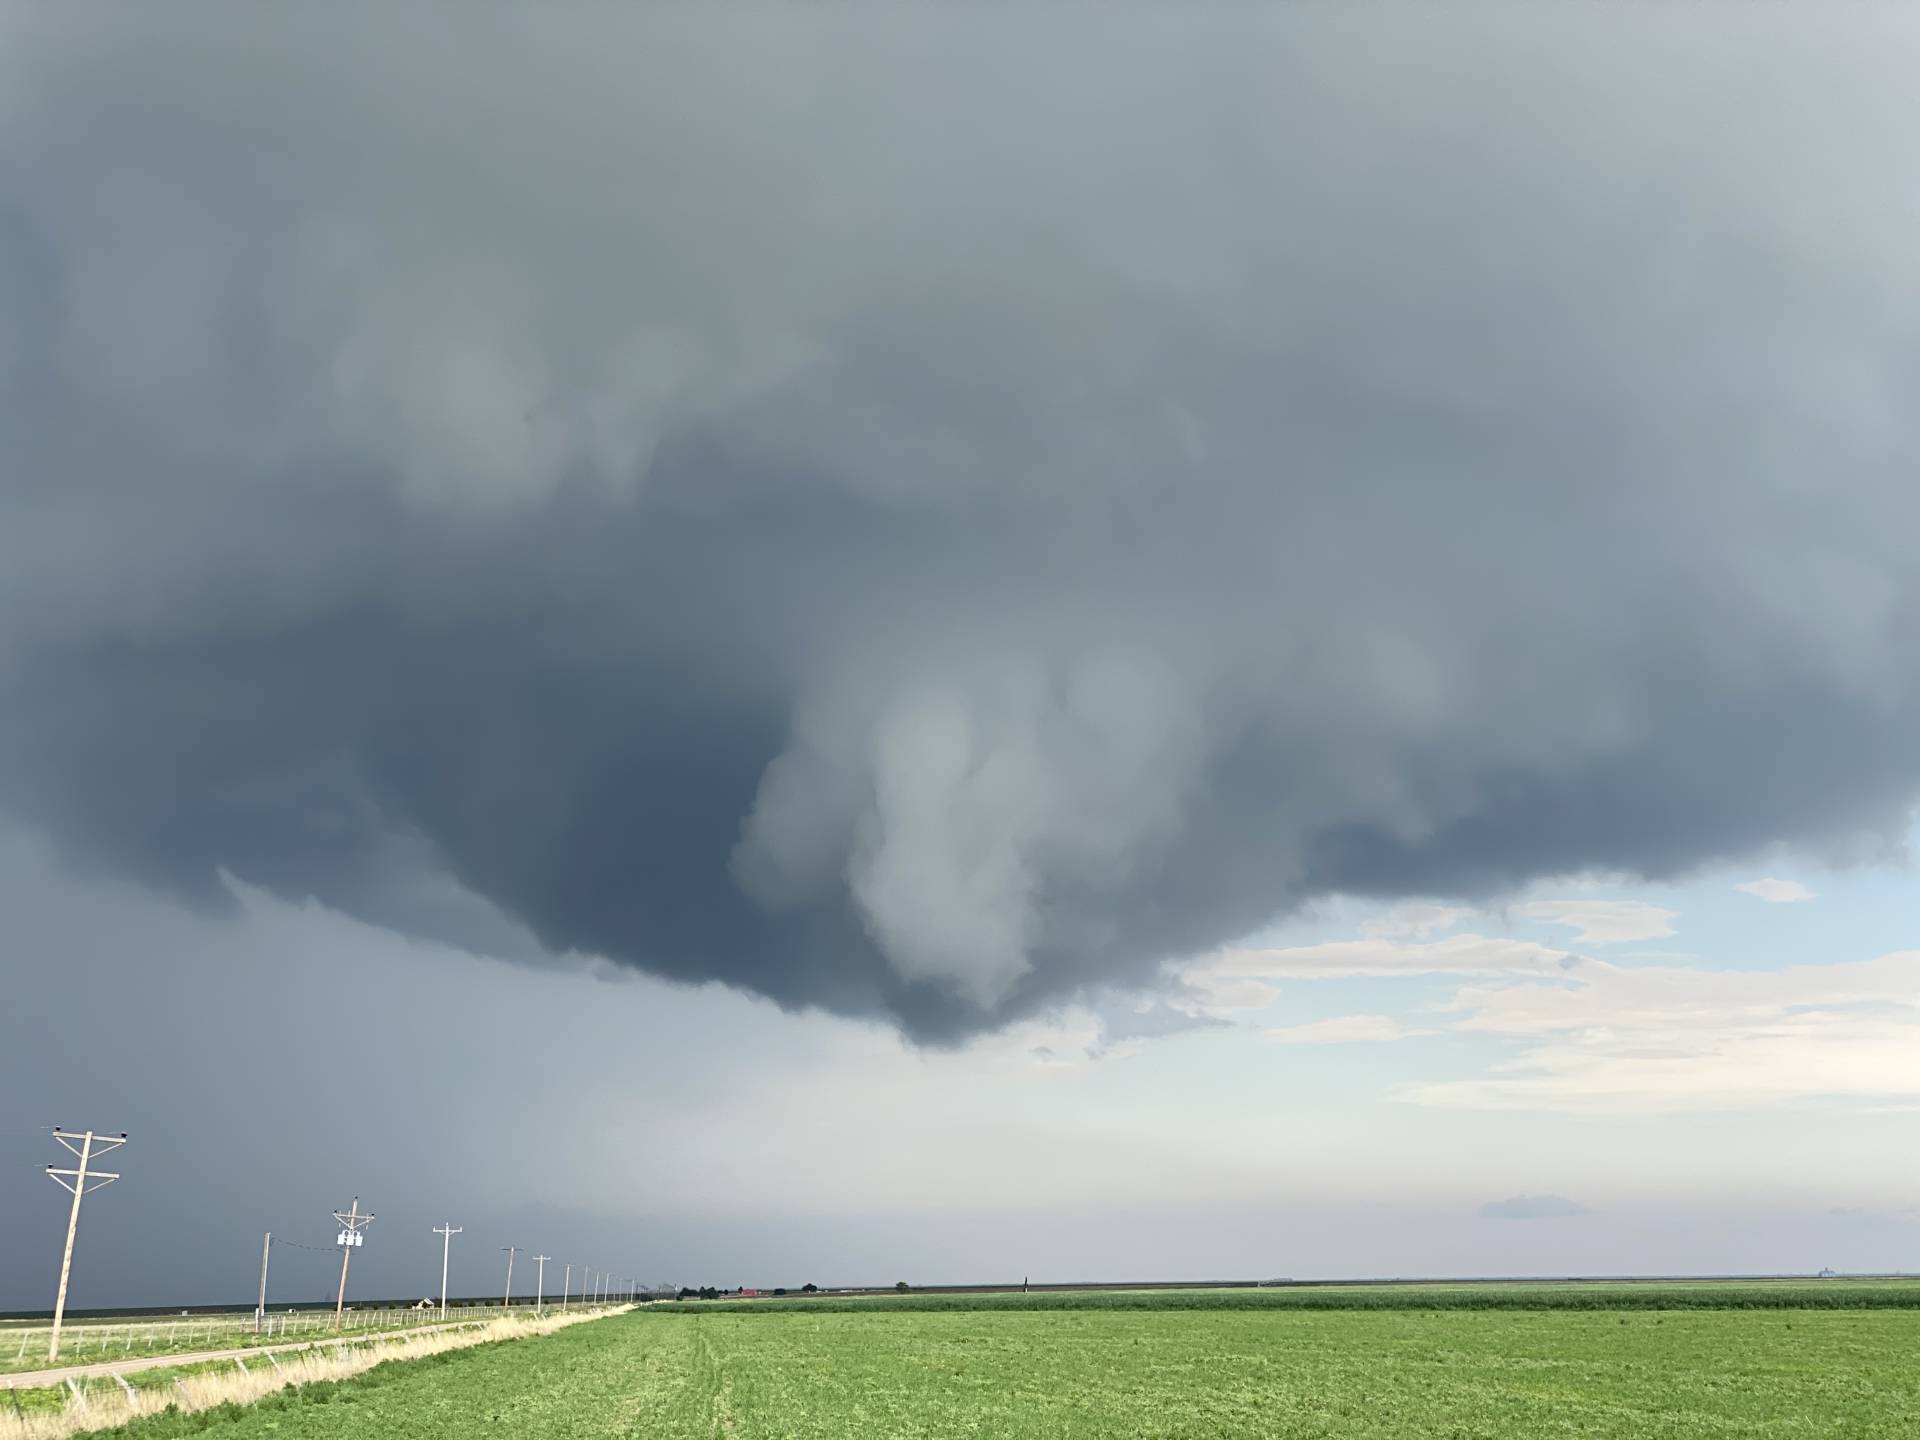 Wall cloud near Morse, TX.
#txwx
..